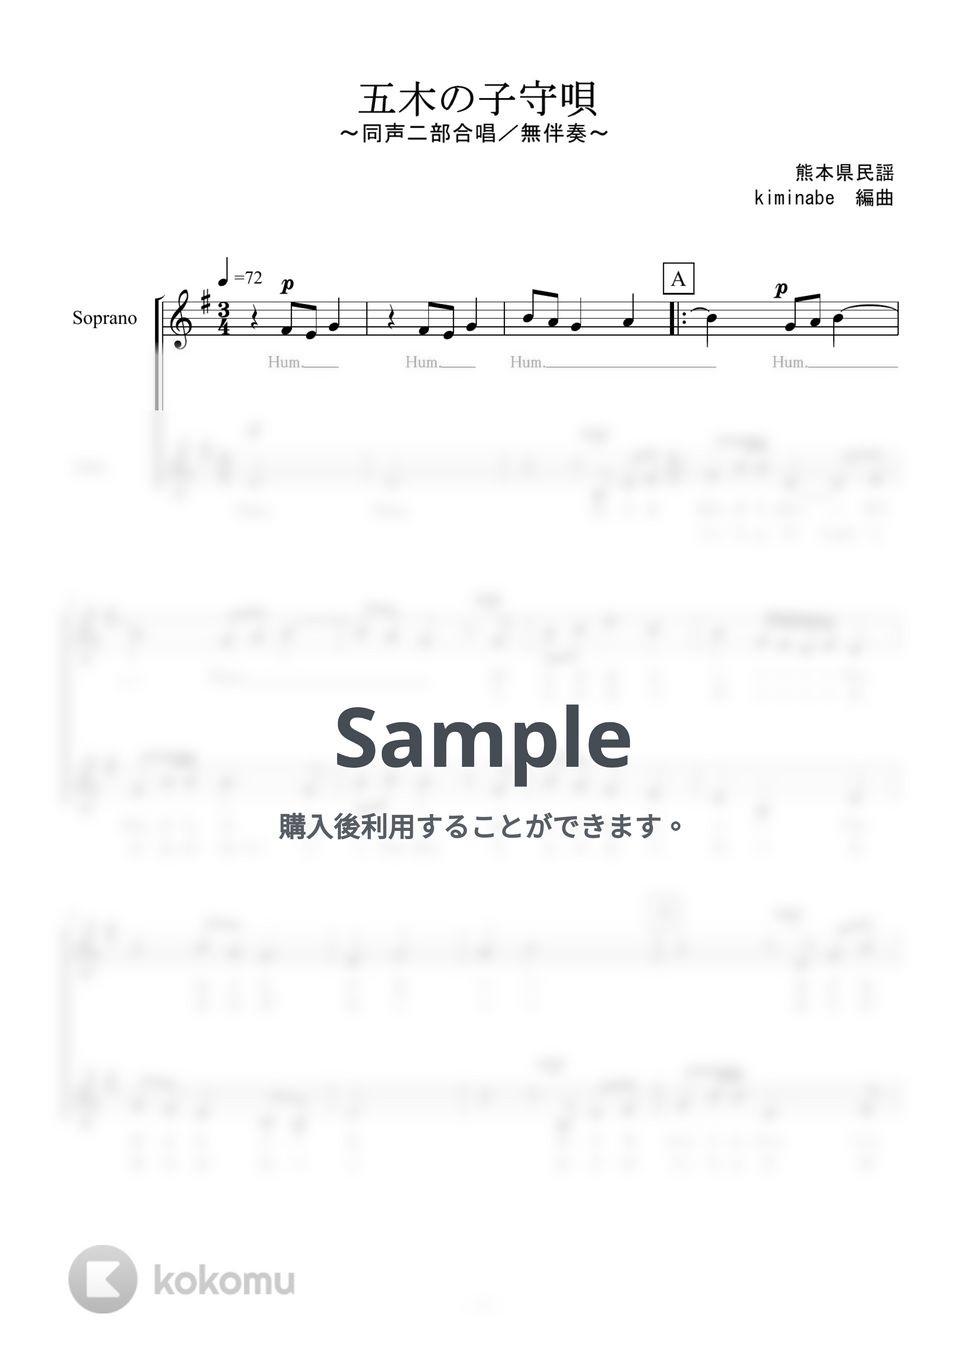 五木の子守唄 (同声二部合唱／無伴奏) by kiminabe